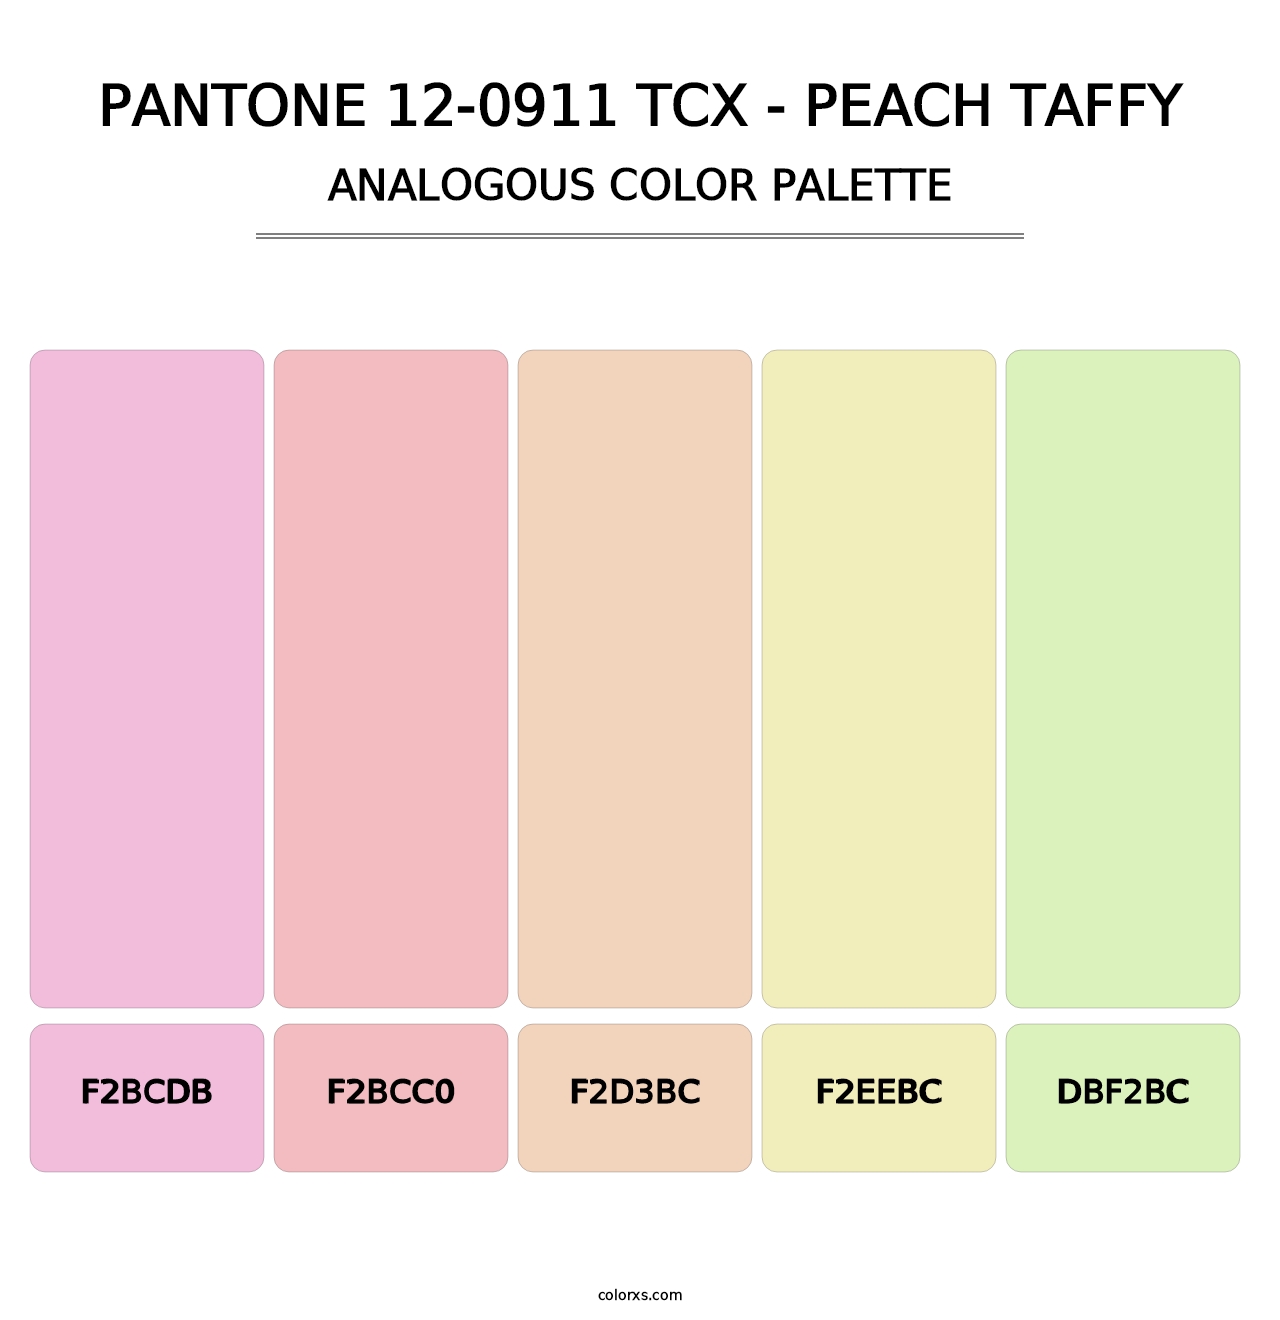 PANTONE 12-0911 TCX - Peach Taffy - Analogous Color Palette